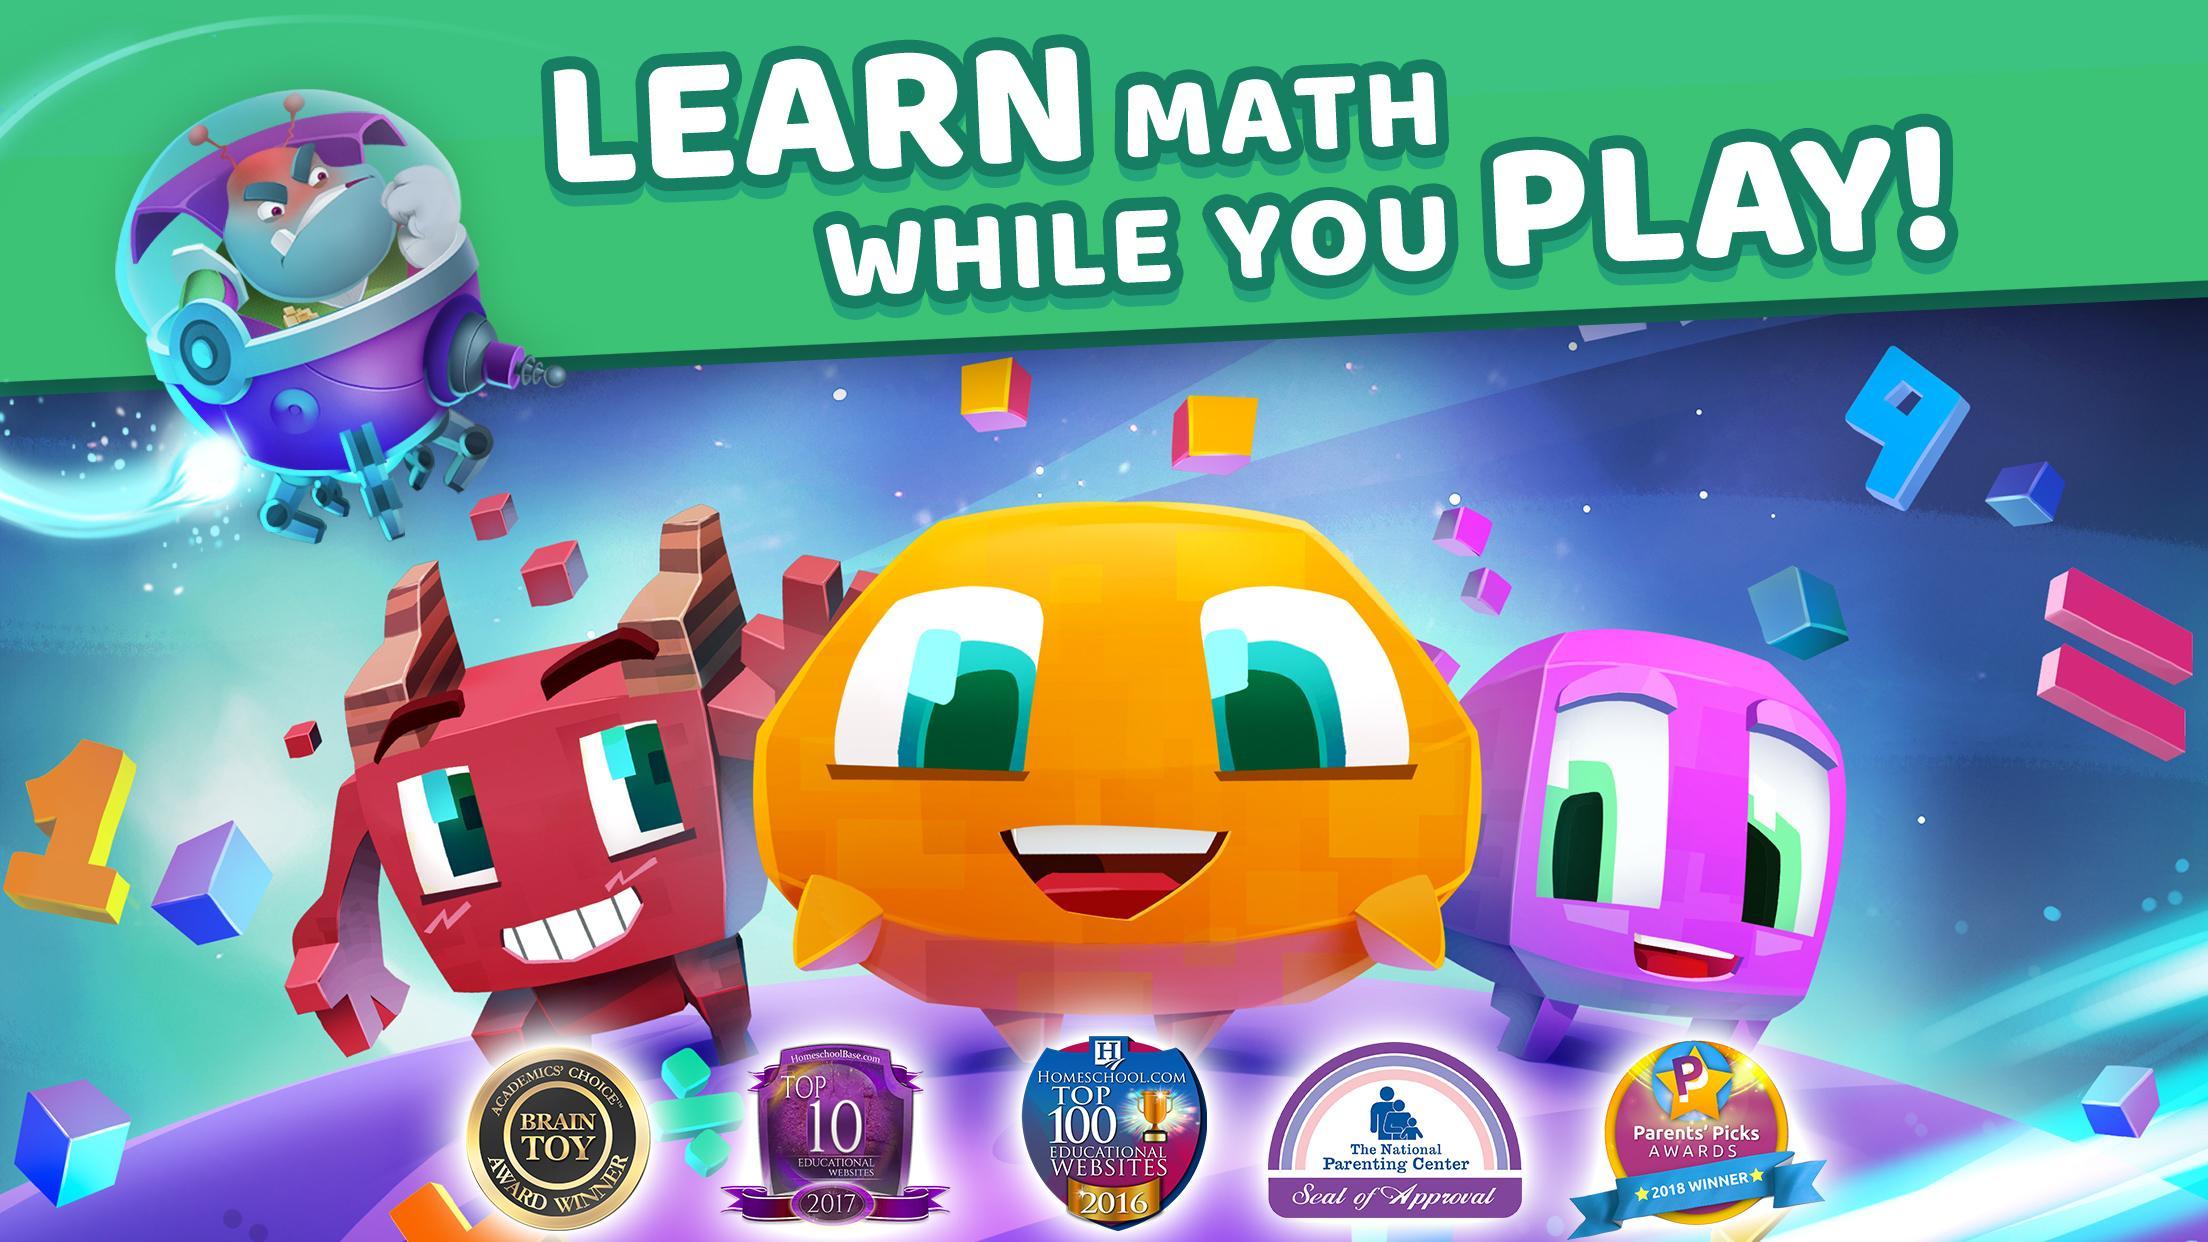 Matific Galaxy - Maths Games for 1st Graders 2.2.2 Screenshot 1